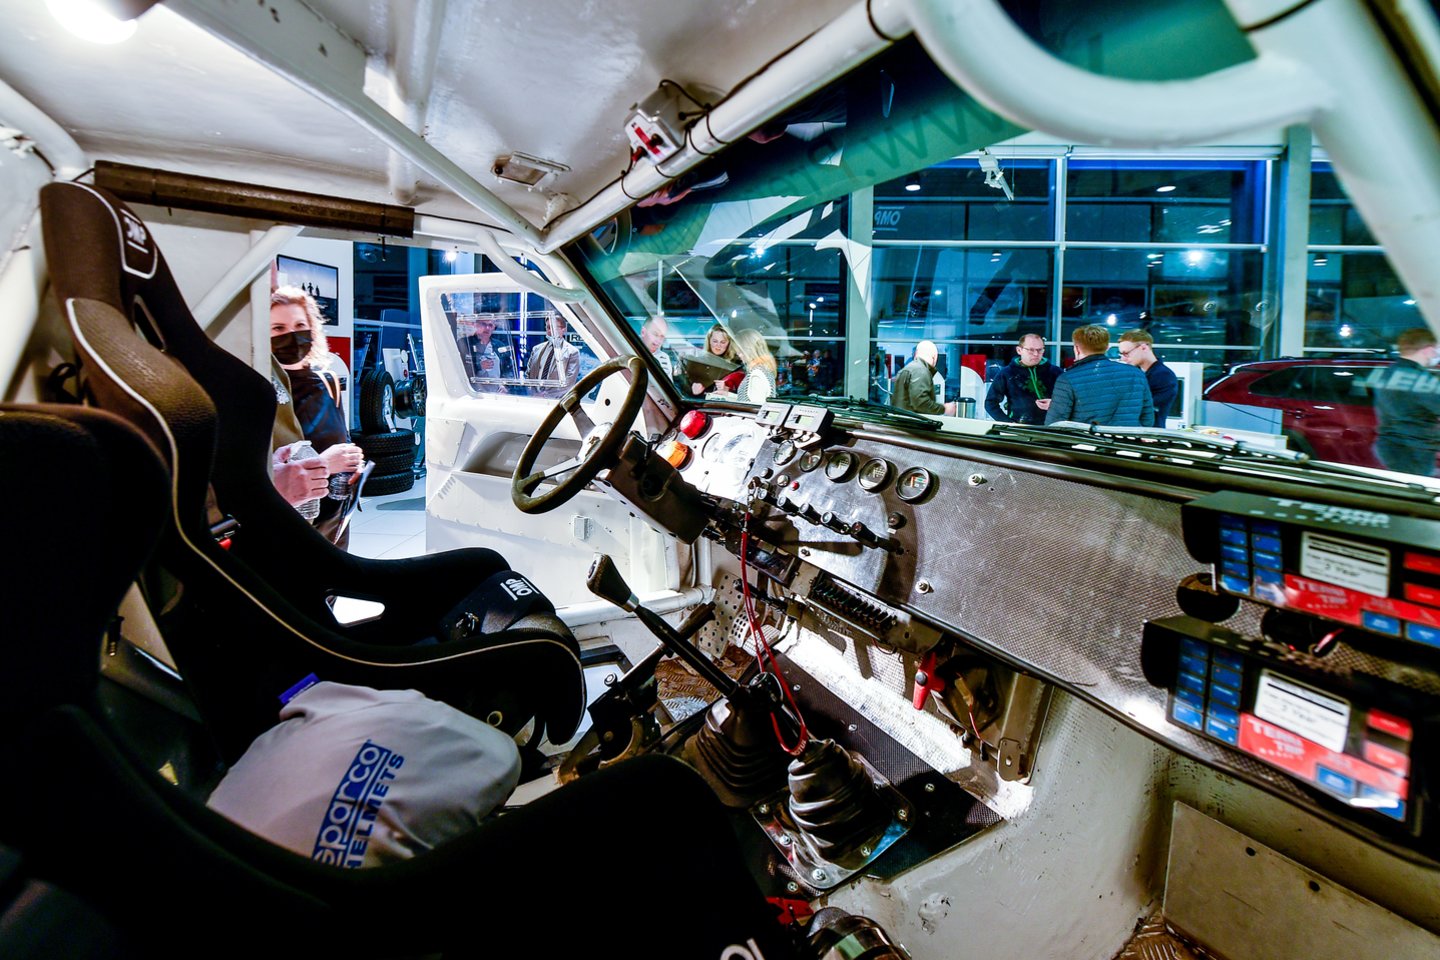 Valdas Valiukevičius ir Paulius Kavaliauskas startuos pačiu seniausiu automobiliu „Toyota Land Cruiser 71“, pagamintu 1987 metais.<br>V.Ščiavinsko nuotr.